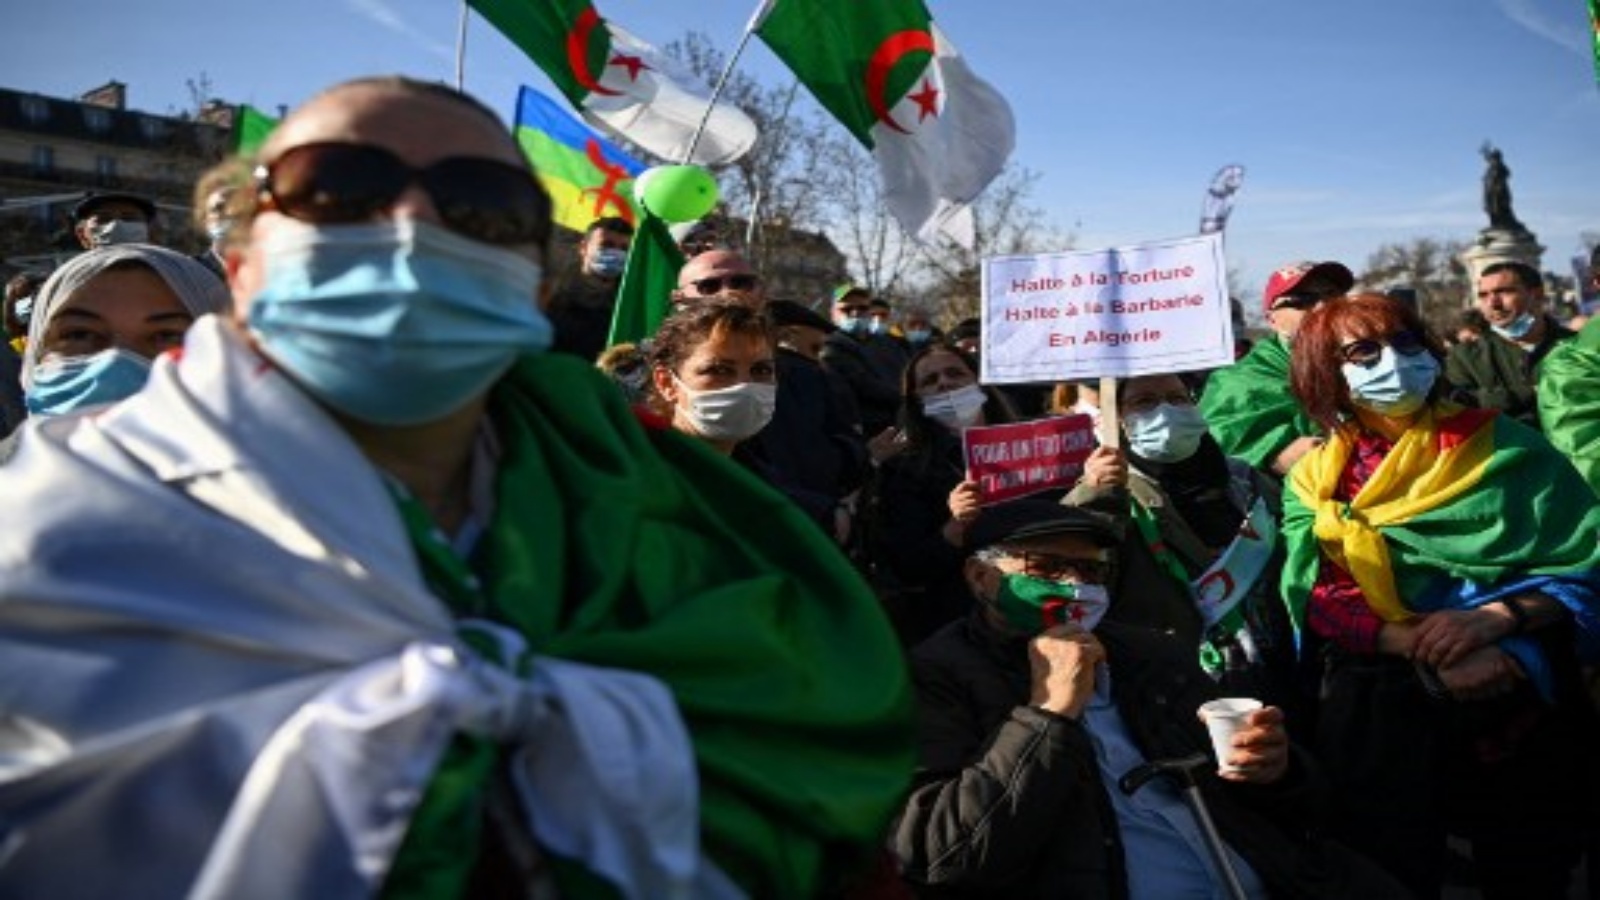 متظاهرون يحملون لافتة كتب عليها `` أوقفوا التعذيب وأوقفوا البربرية في الجزائر '' ويلوحون بالأعلام الوطنية الجزائرية خلال مسيرة في باريس في 21 فبراير 2021 ، دعما لحركة الحراك المناهضة للحكومة في الجزائر